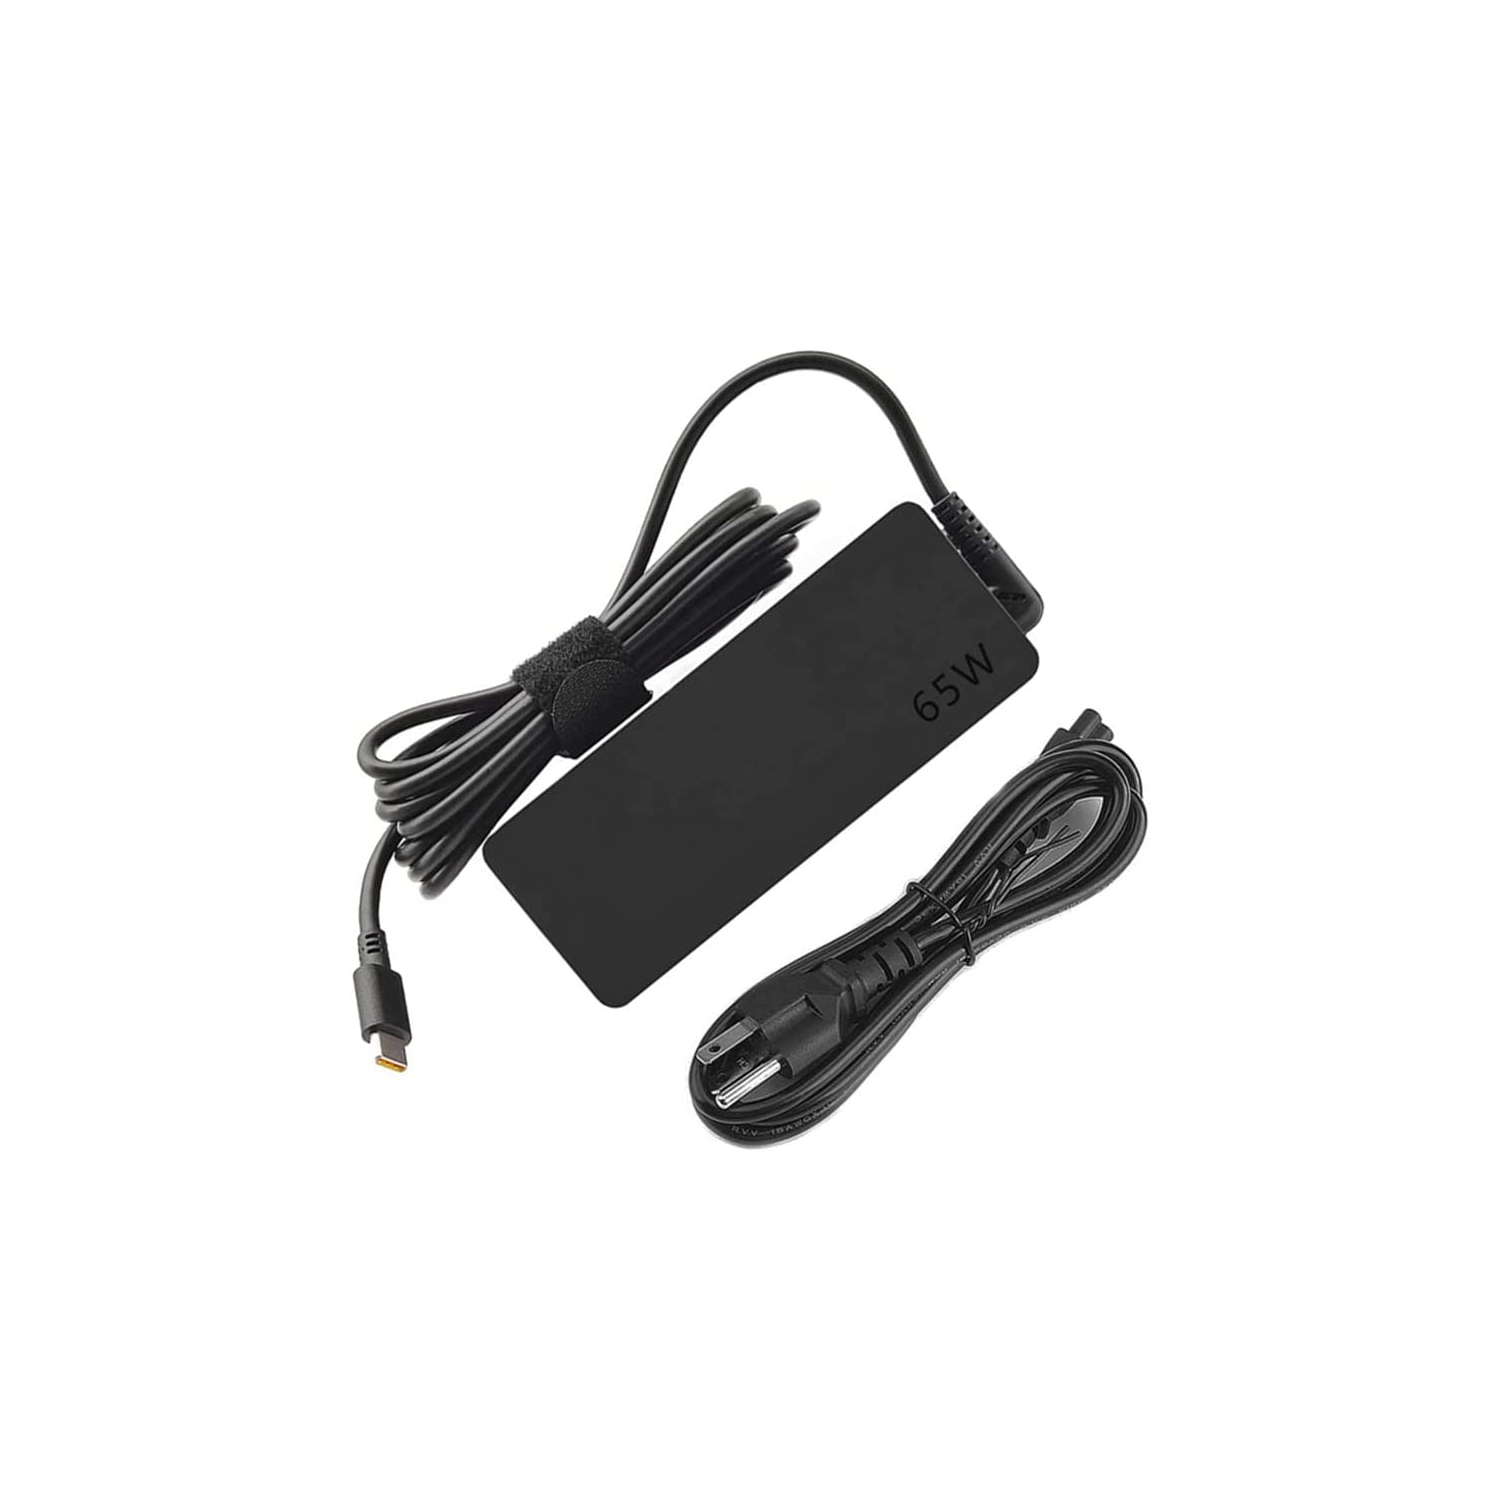 65W USB-C/Type C Laptop Charger Adapter for Lenovo Chromebook ThinkPad X1 T480 T480s T580 T580s T490s E585 E580 E590 E595 C330 14e 300e 500e Yoga 720-13IKB Ideapad 100e 730S 910-13